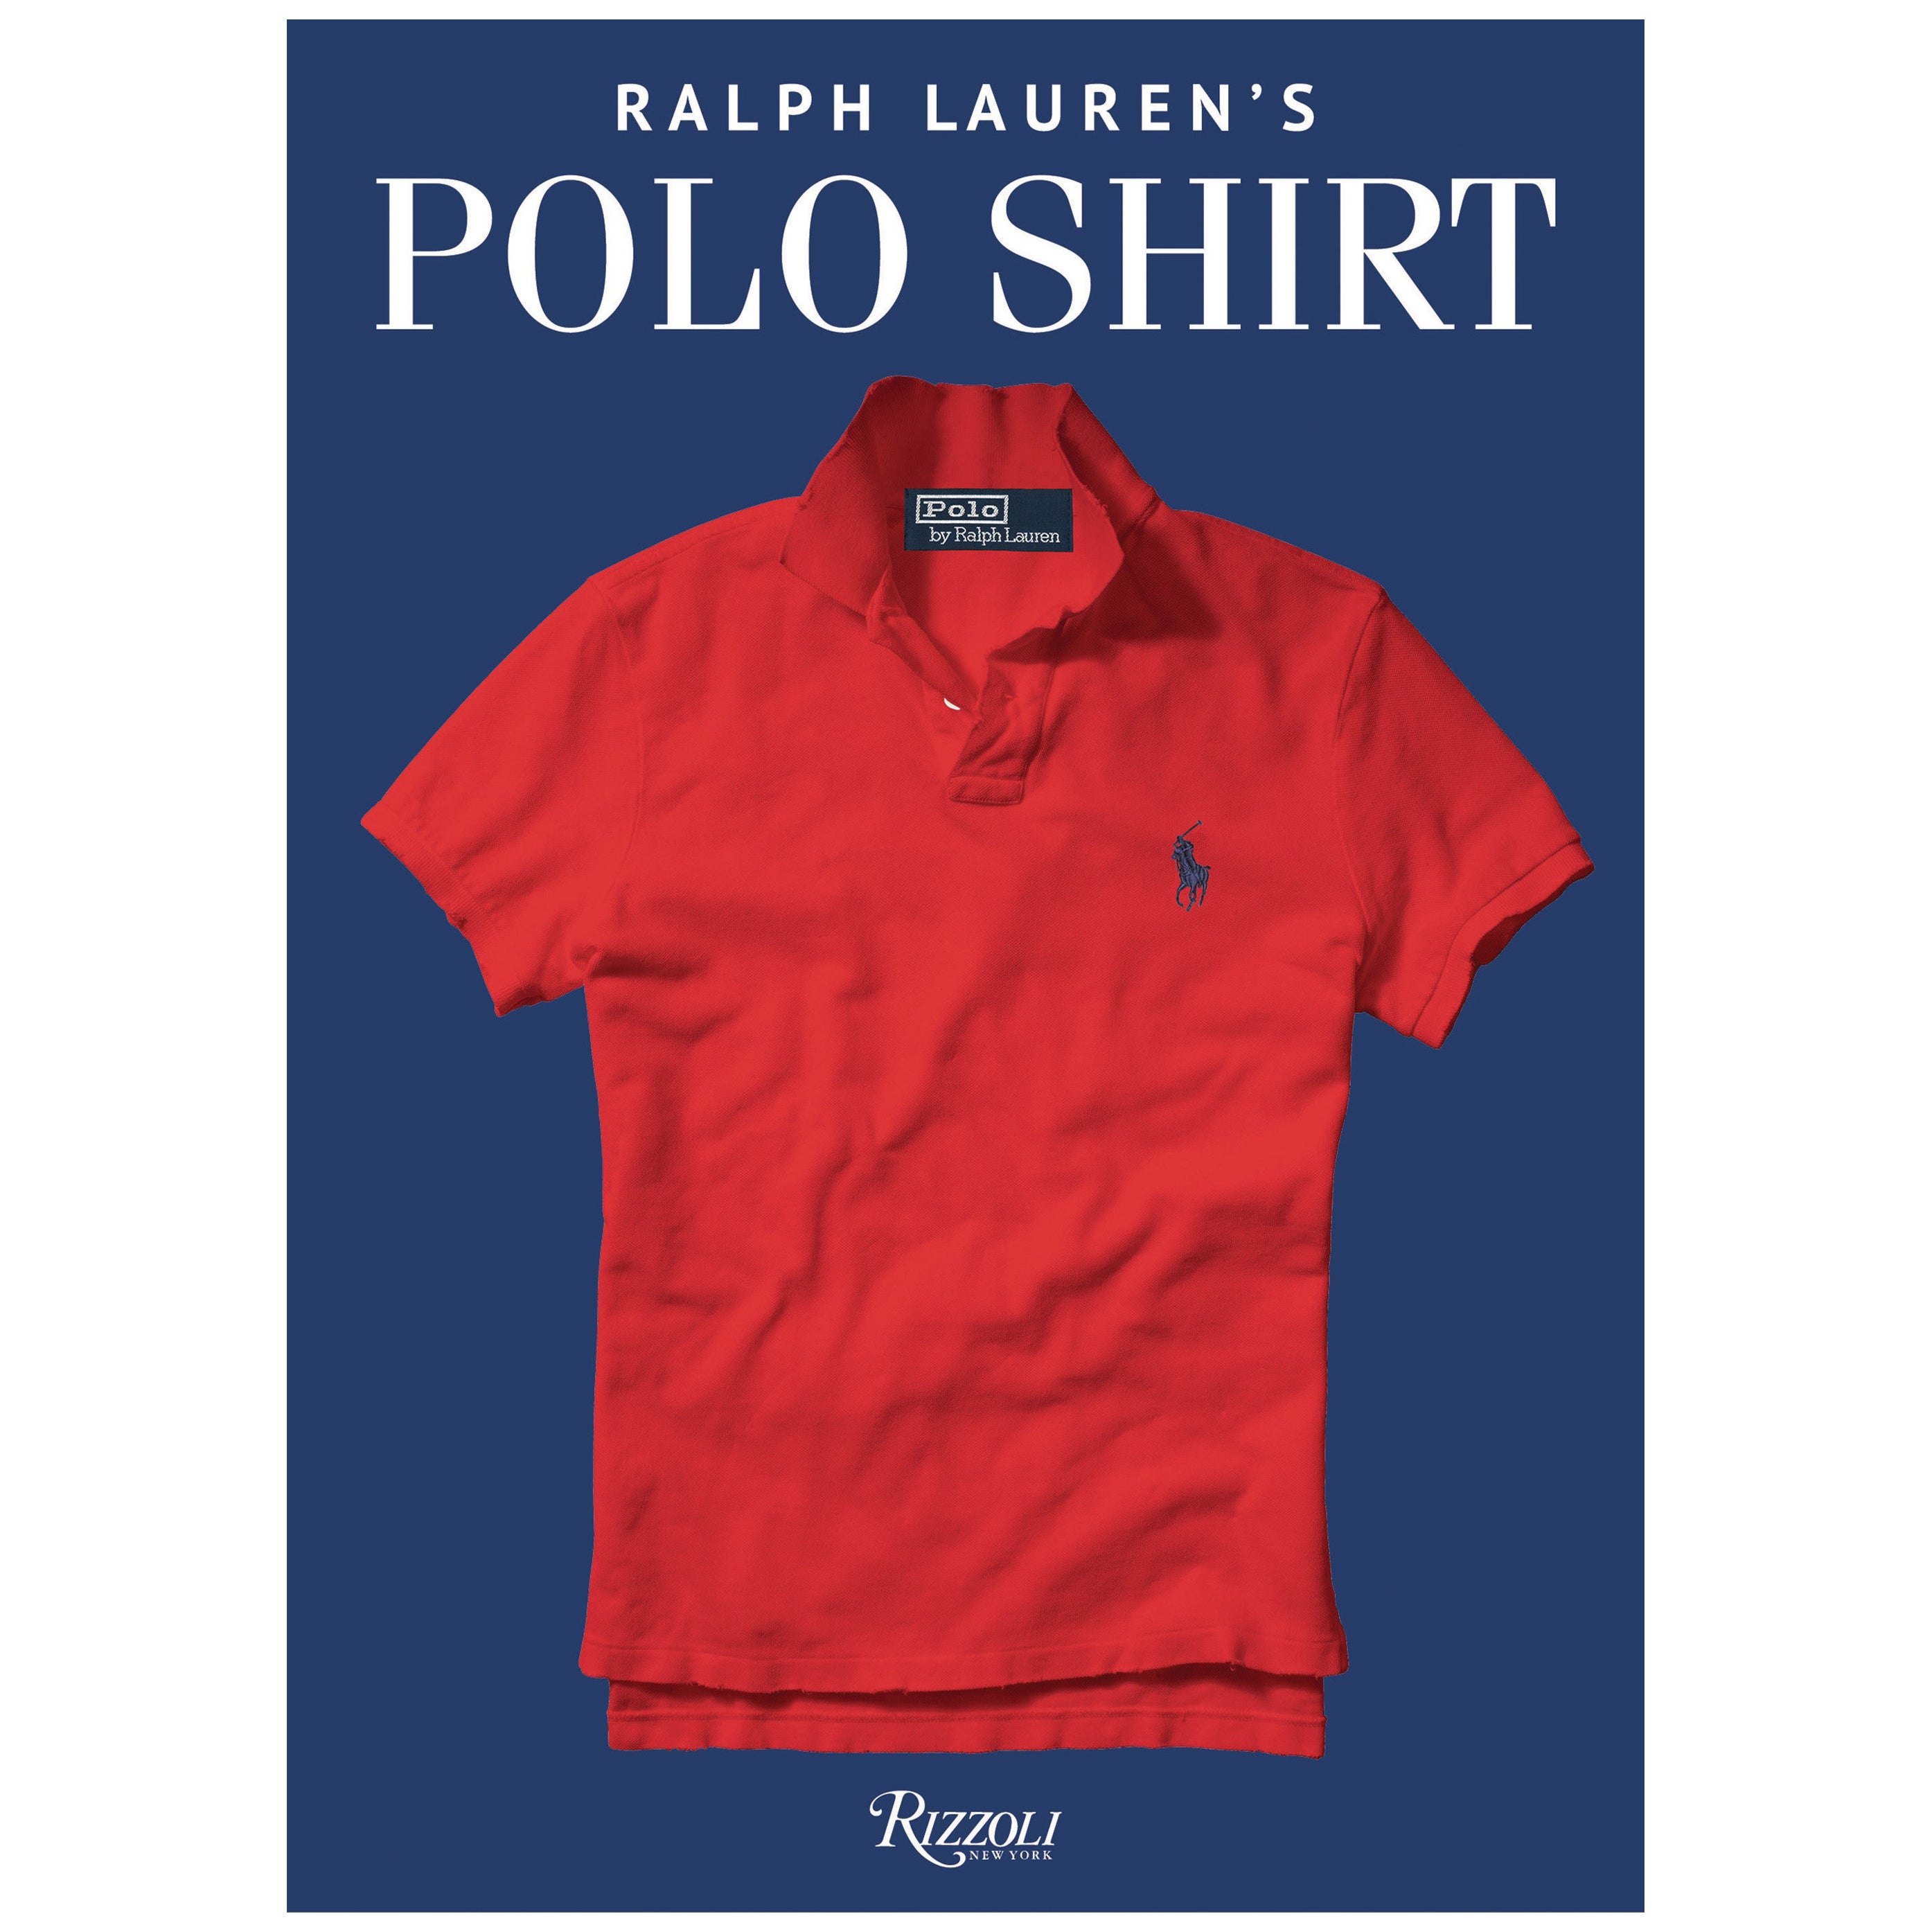 Polo Ralph Lauren's